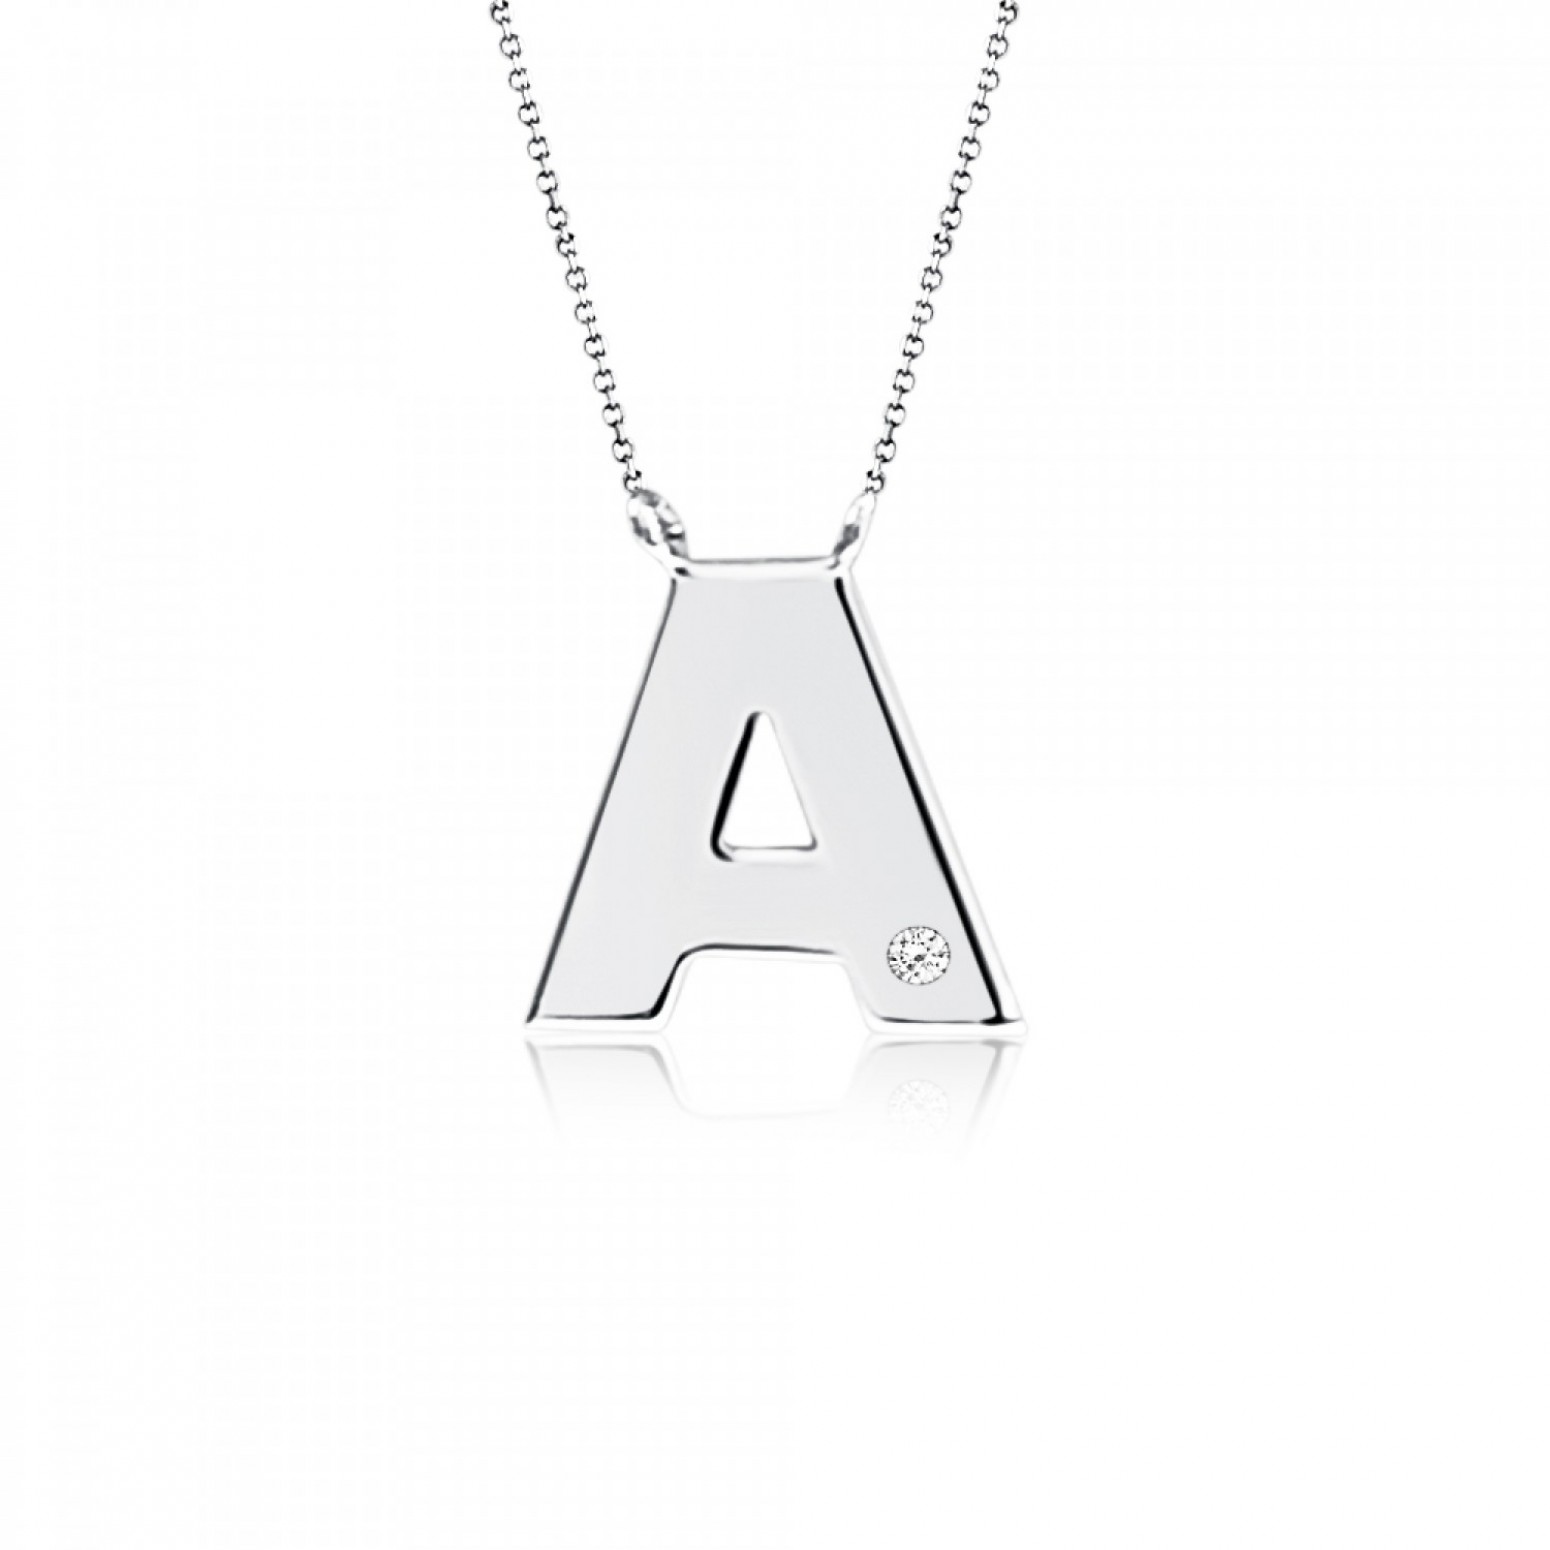 Monogram necklace Α, Κ9 white gold with diamond 0.005ct, VS2, H ko4886 NECKLACES Κοσμηματα - chrilia.gr